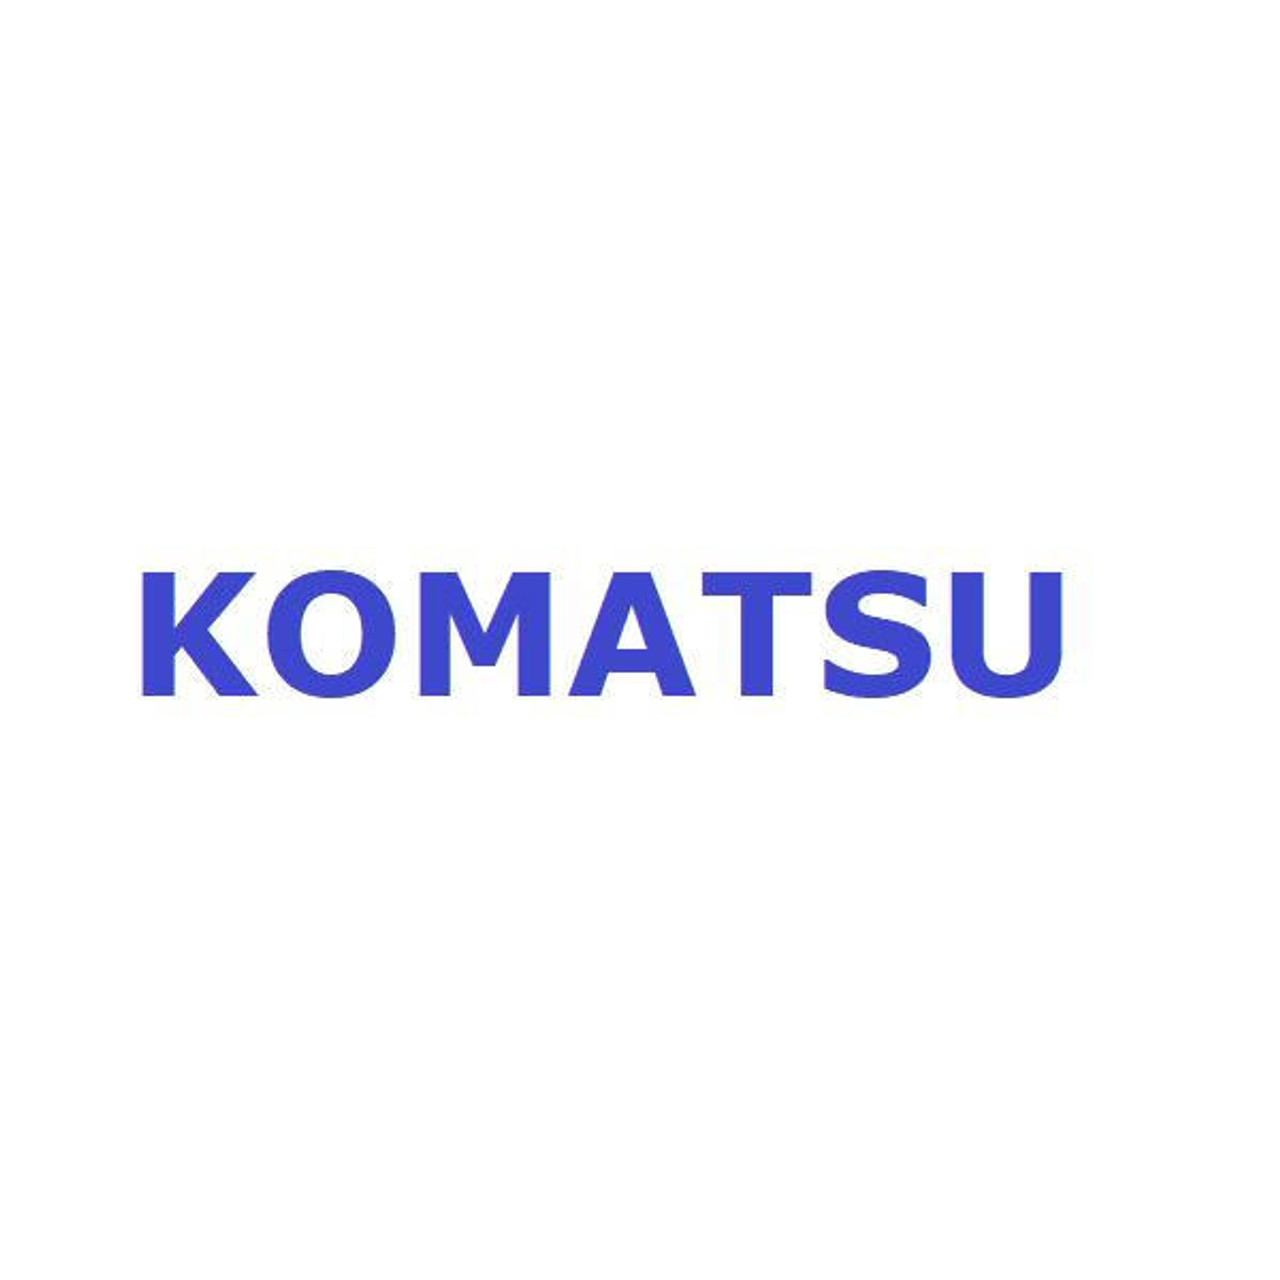 Komatsu Seal # 56D-50-26200K Seal Kit